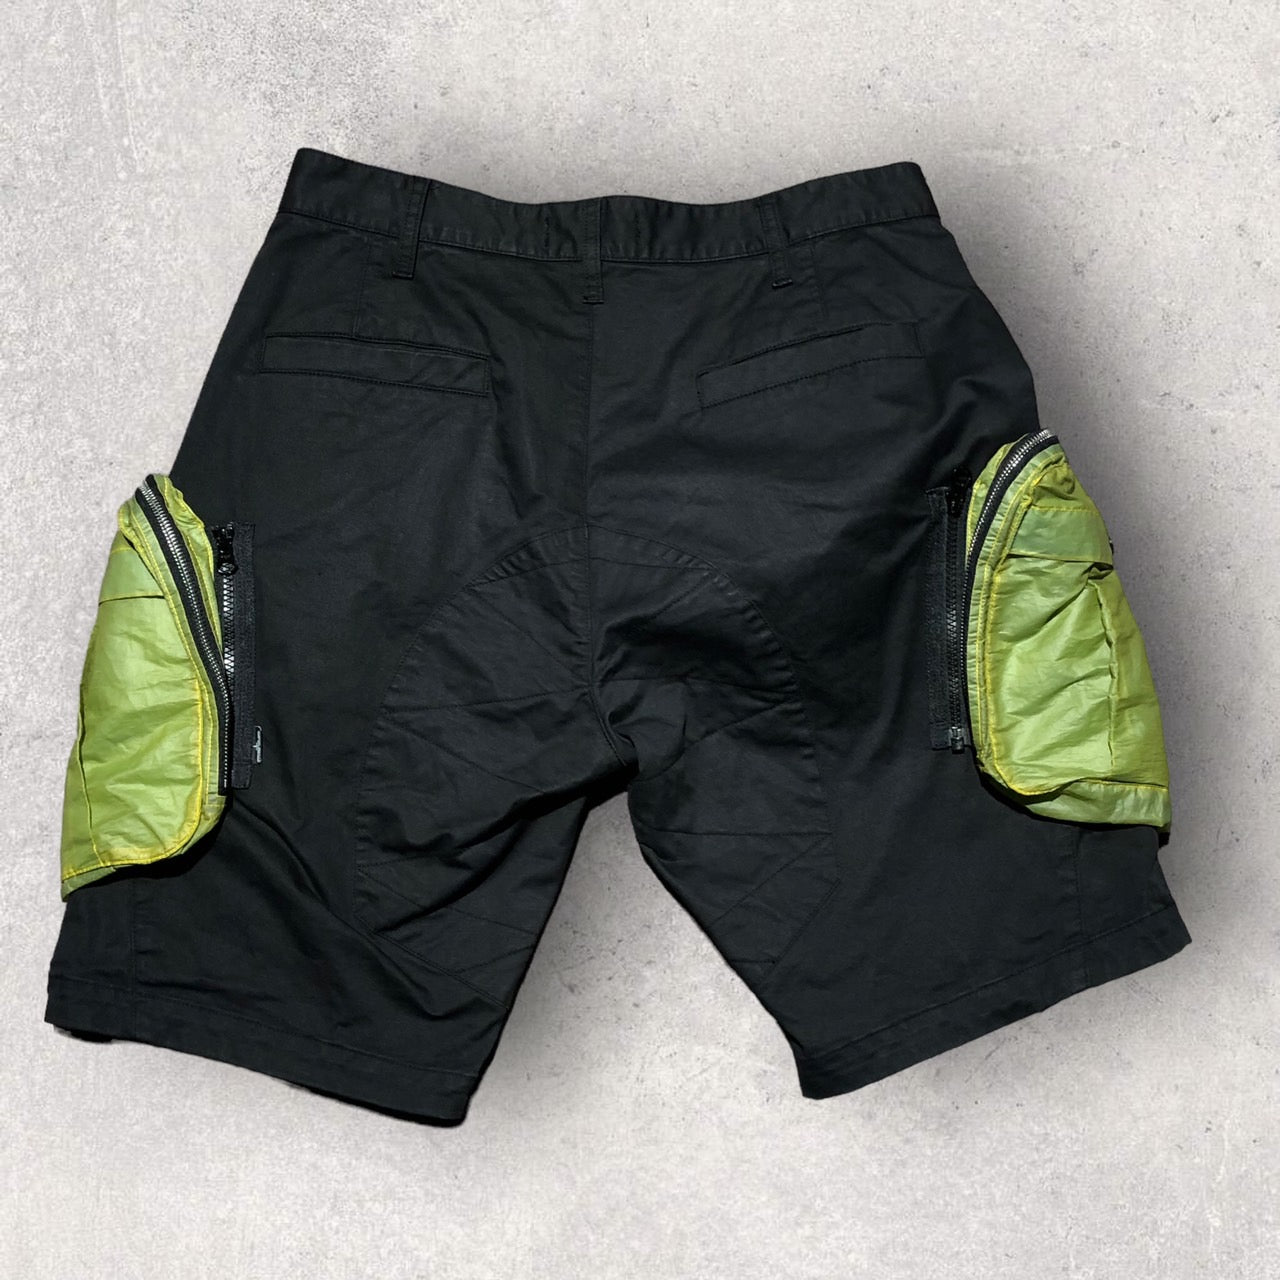 STONE ISLAND SHADOW PROJECT(ストーンアイランドシャドウプロジェクト) Bermuda Shorts 7219L0109 46 ブラック